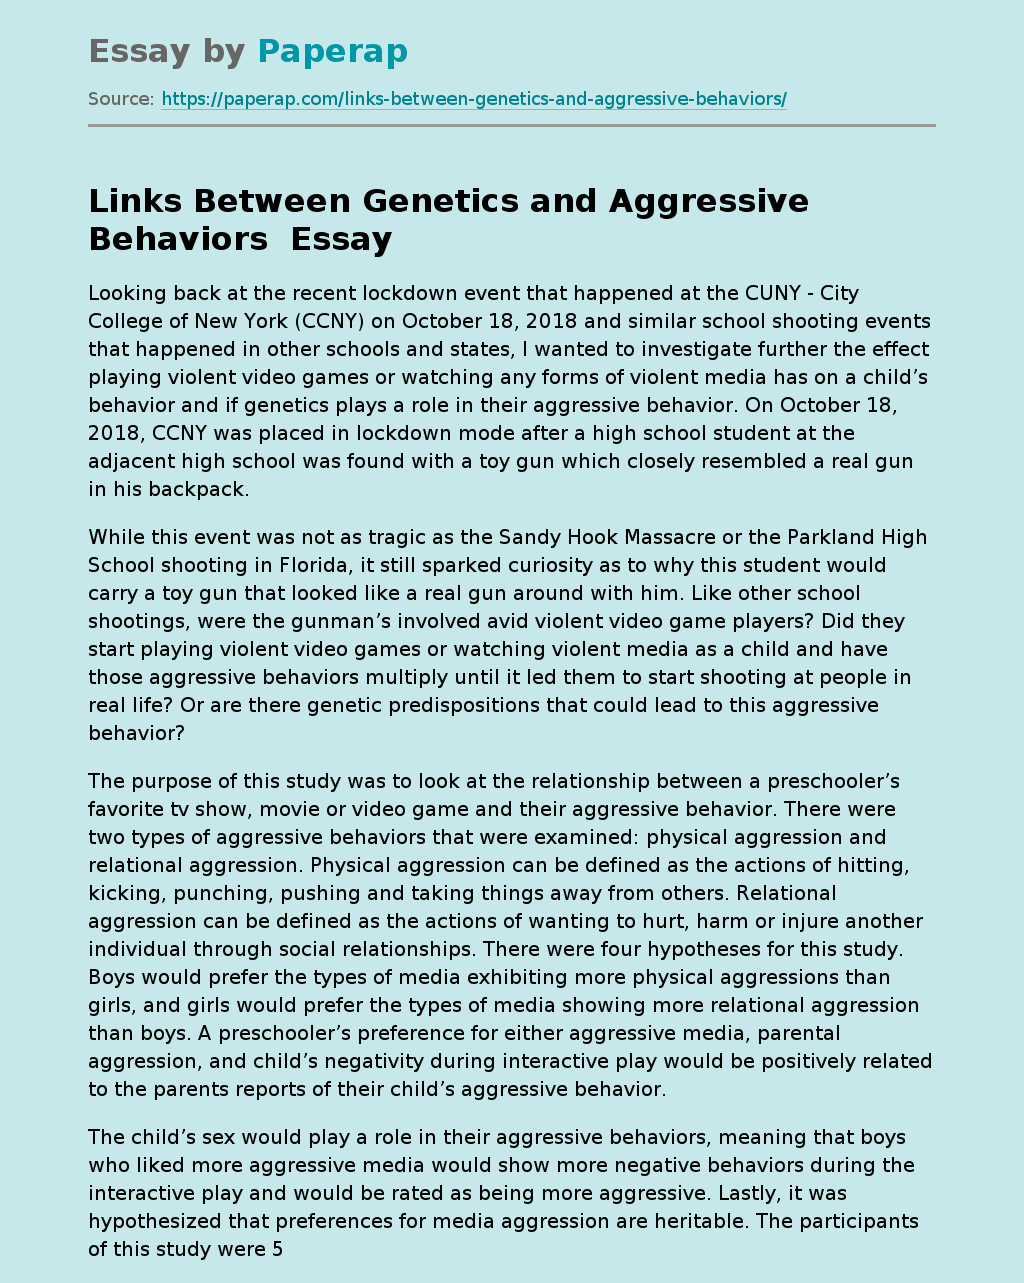 Links Between Genetics and Aggressive Behaviors 